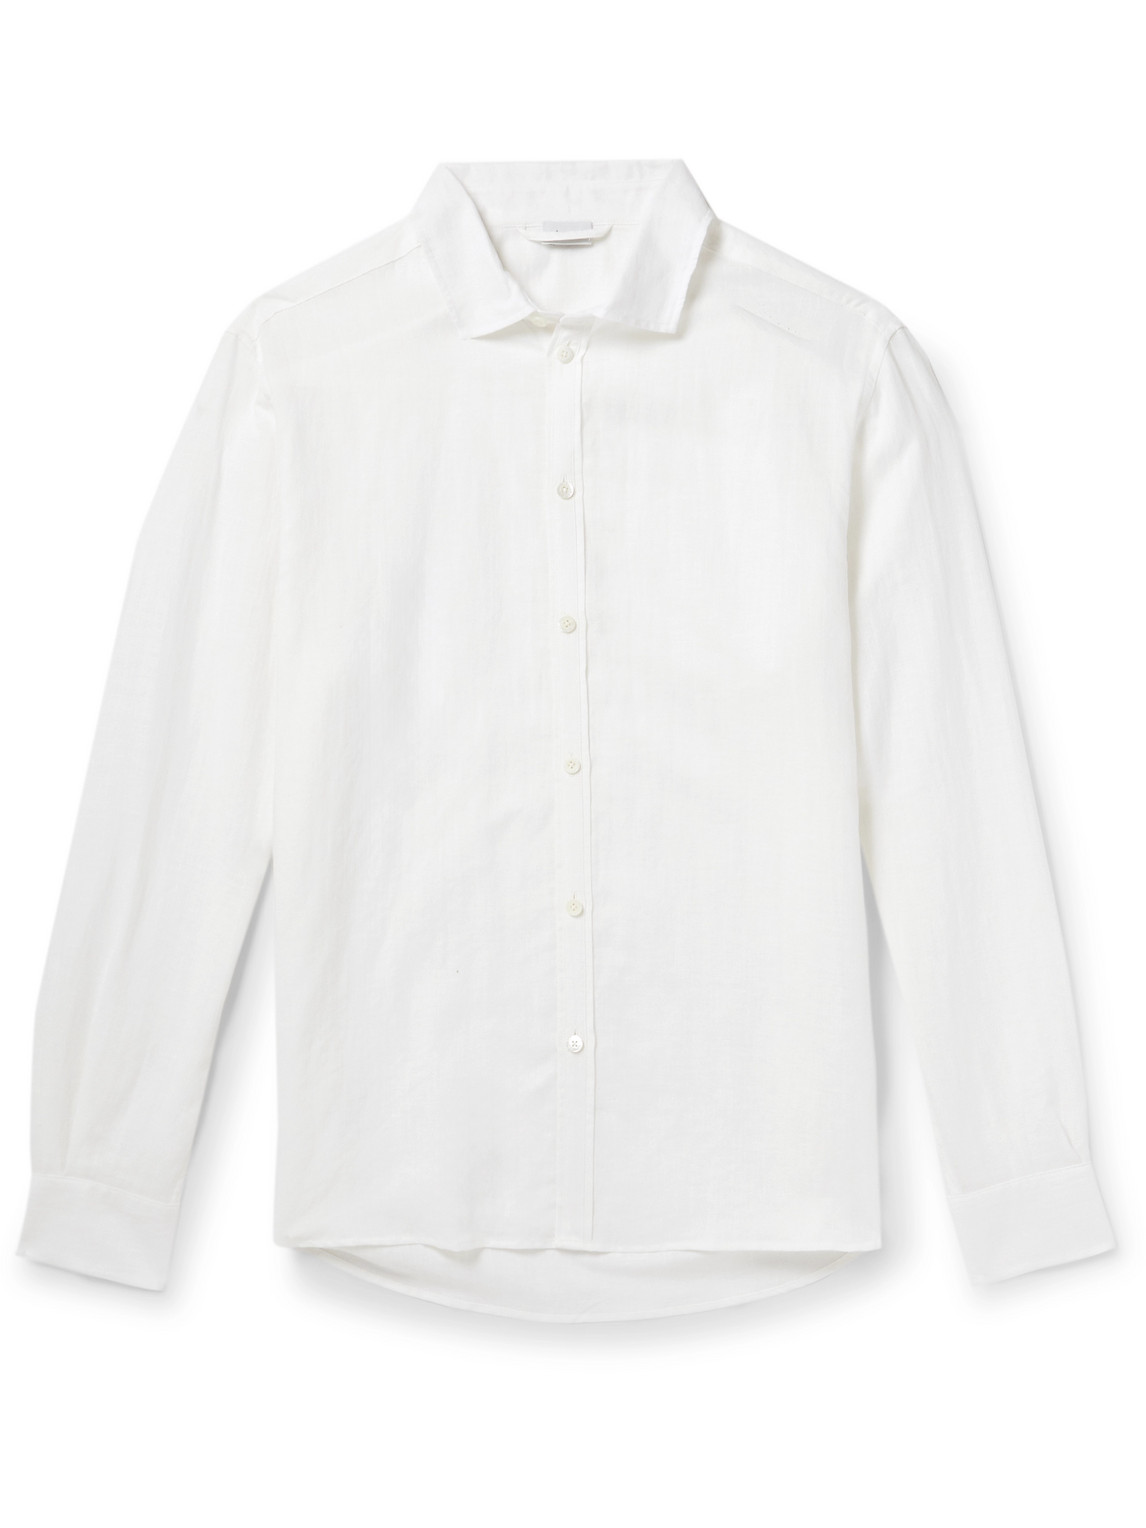 Zimmerli - Cutaway-Collar Linen and Cotton-Blend Shirt - Men - White - S von Zimmerli